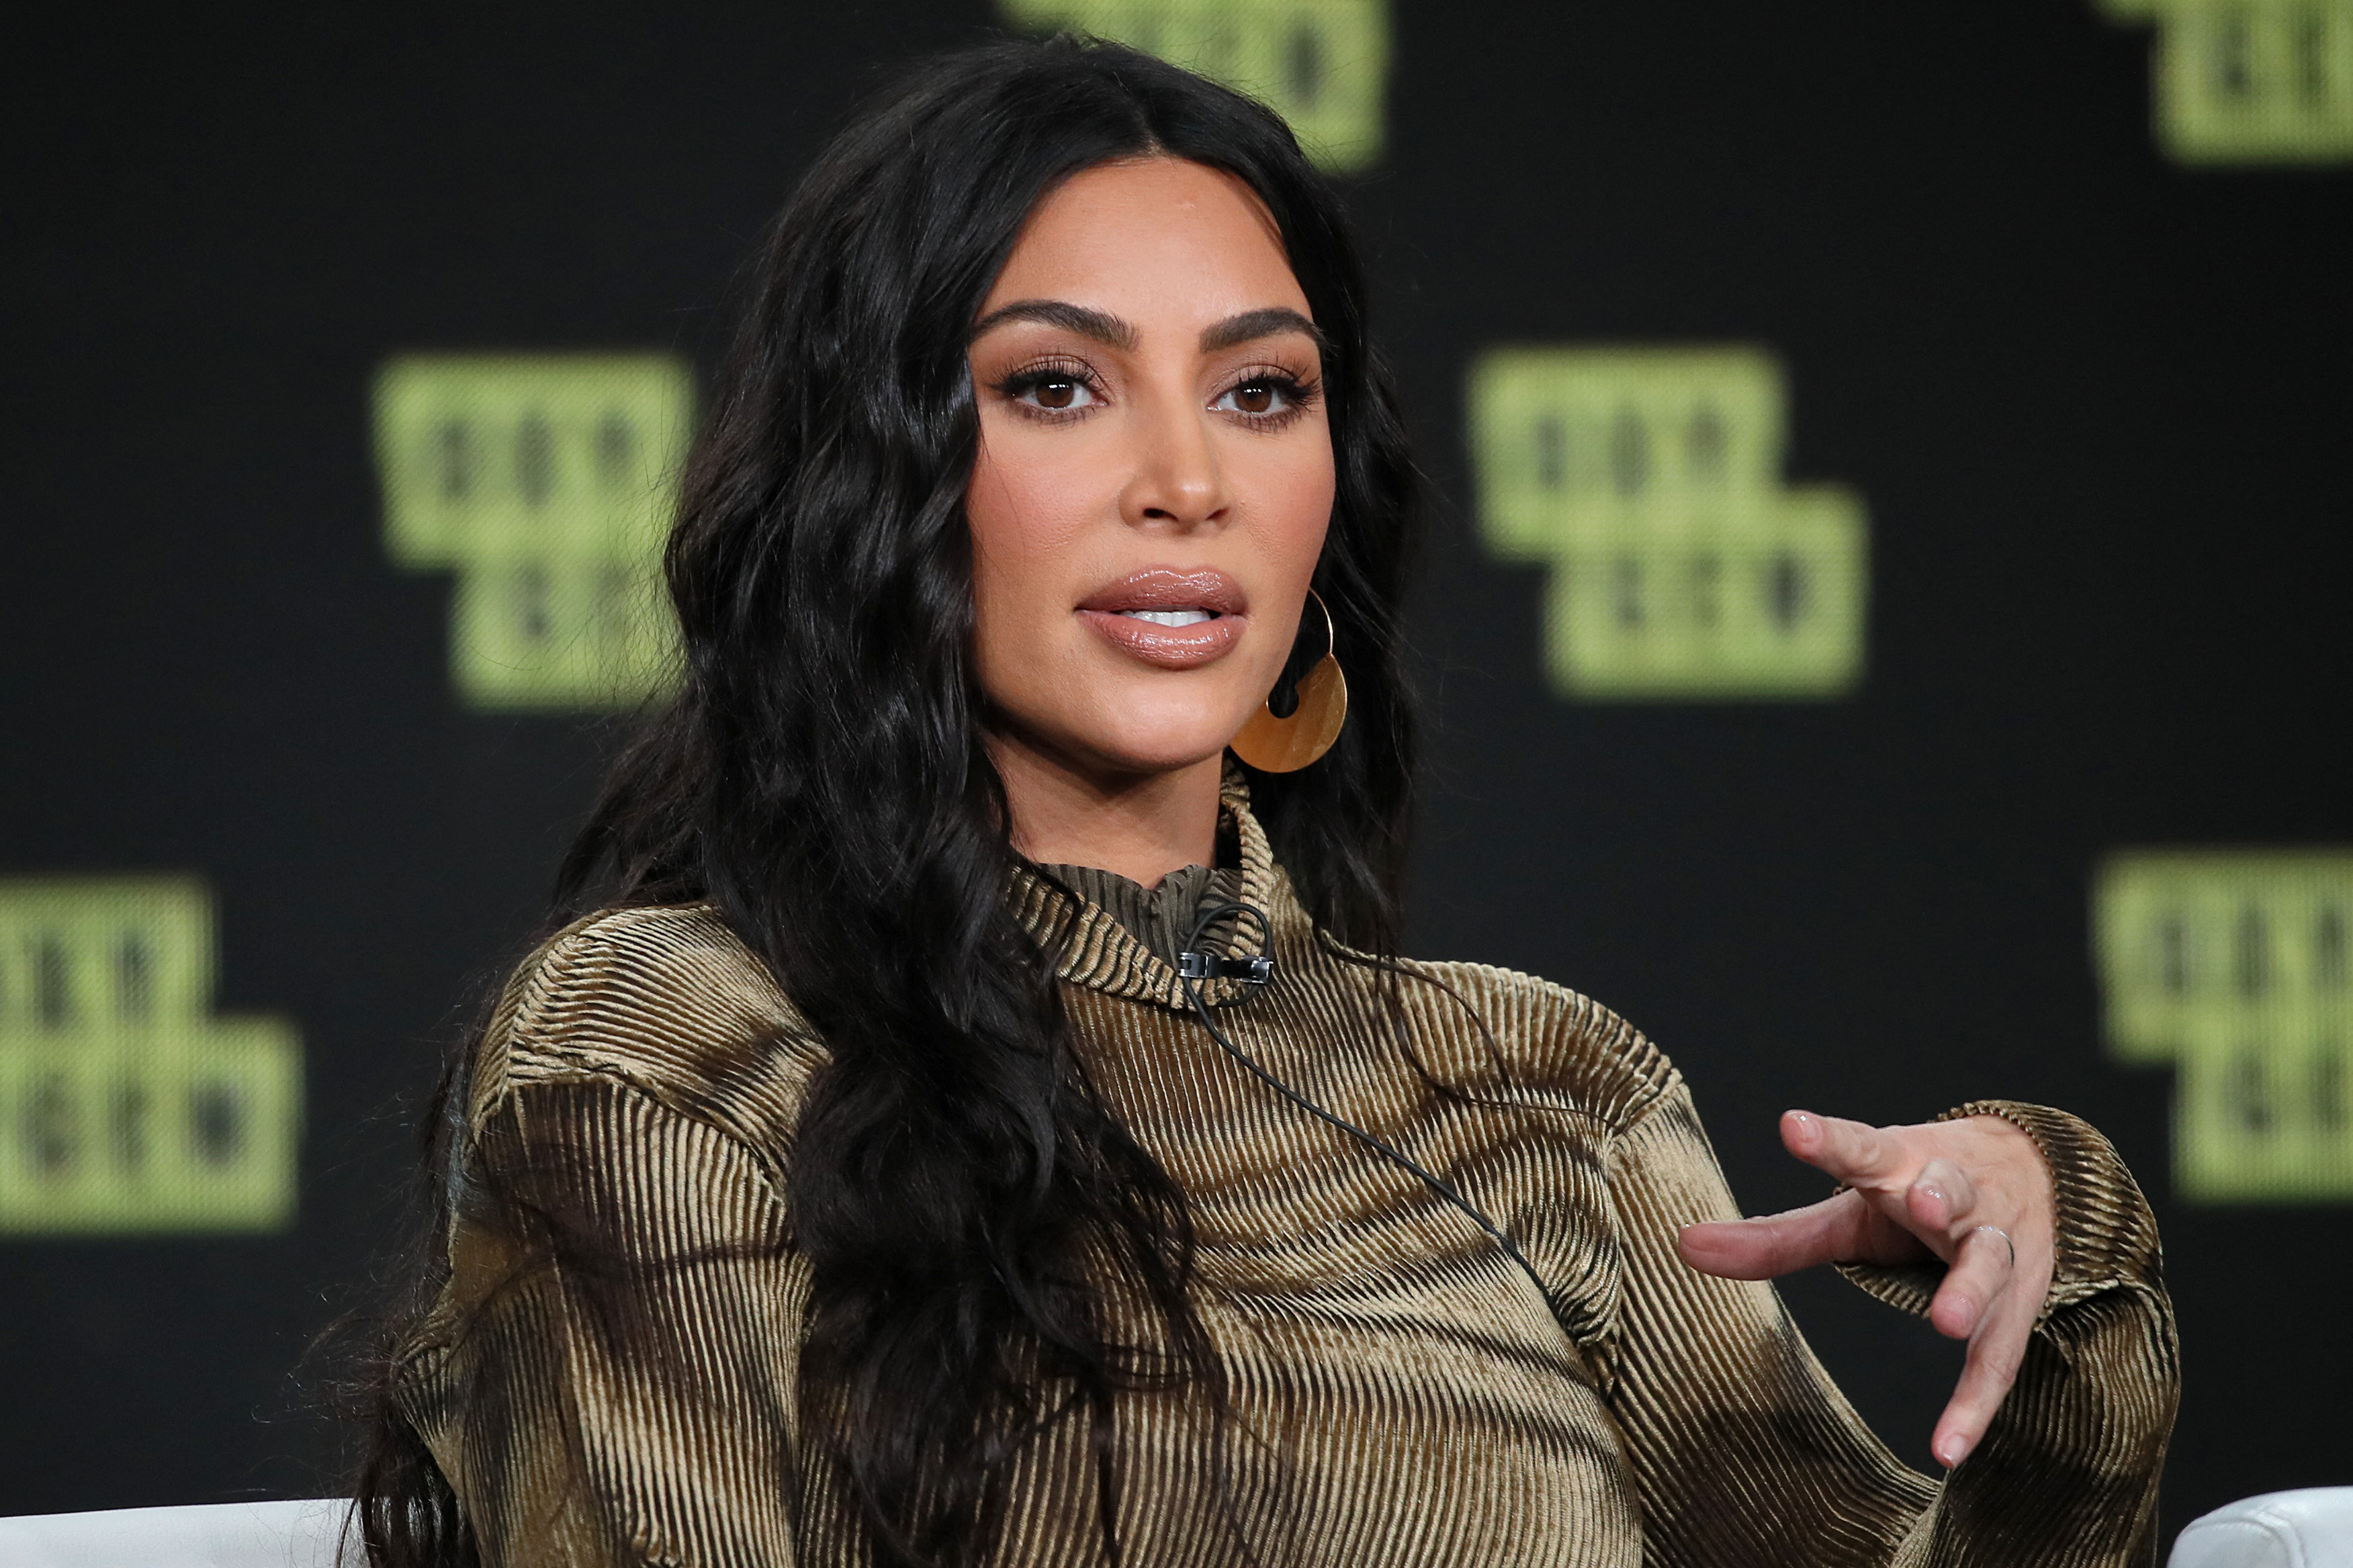 Nagyon drága posztot lőtt Kim Kardashian, meg is büntették miatta